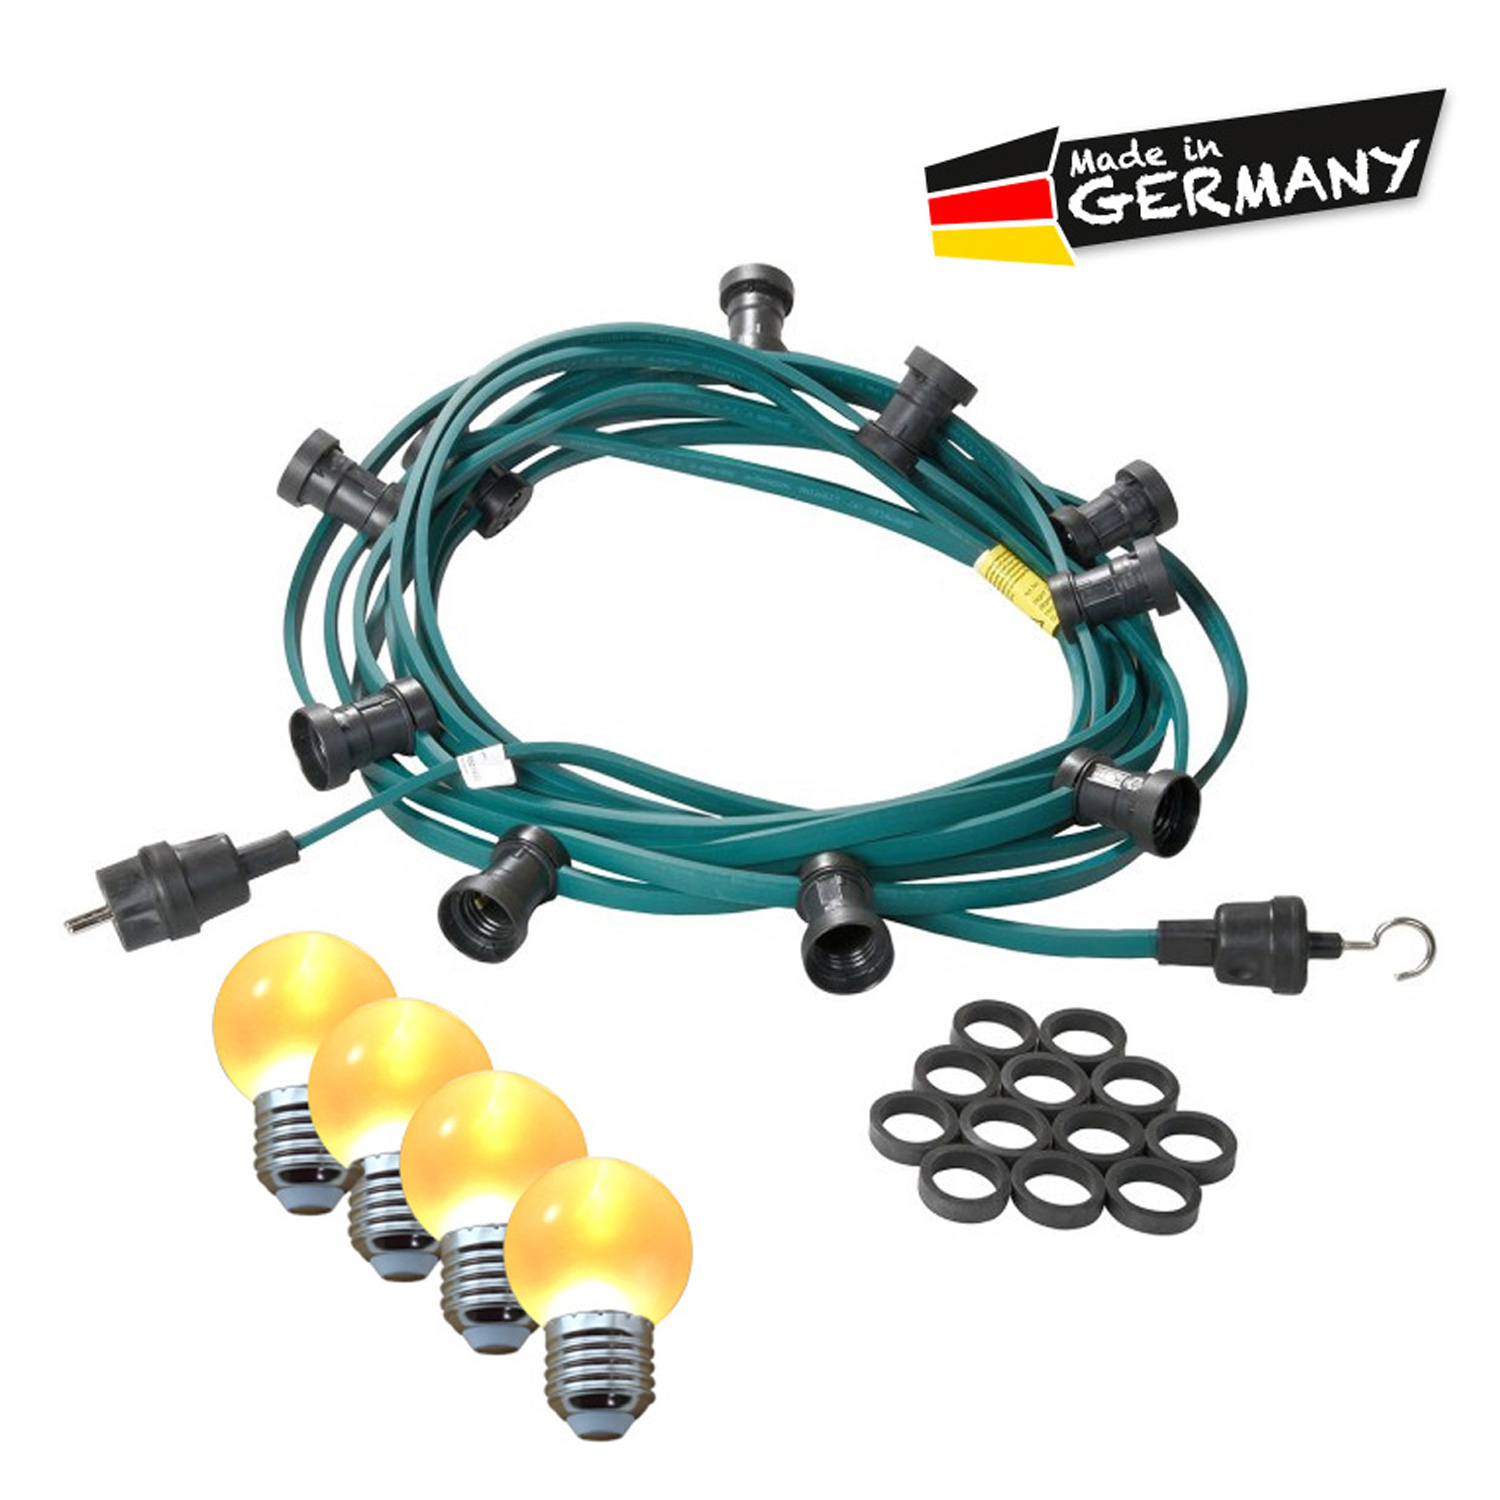 Illu-/Partylichterkette 30m | Außenlichterkette | Made in Germany | 30 x ultra-warmweisse LED Kugeln